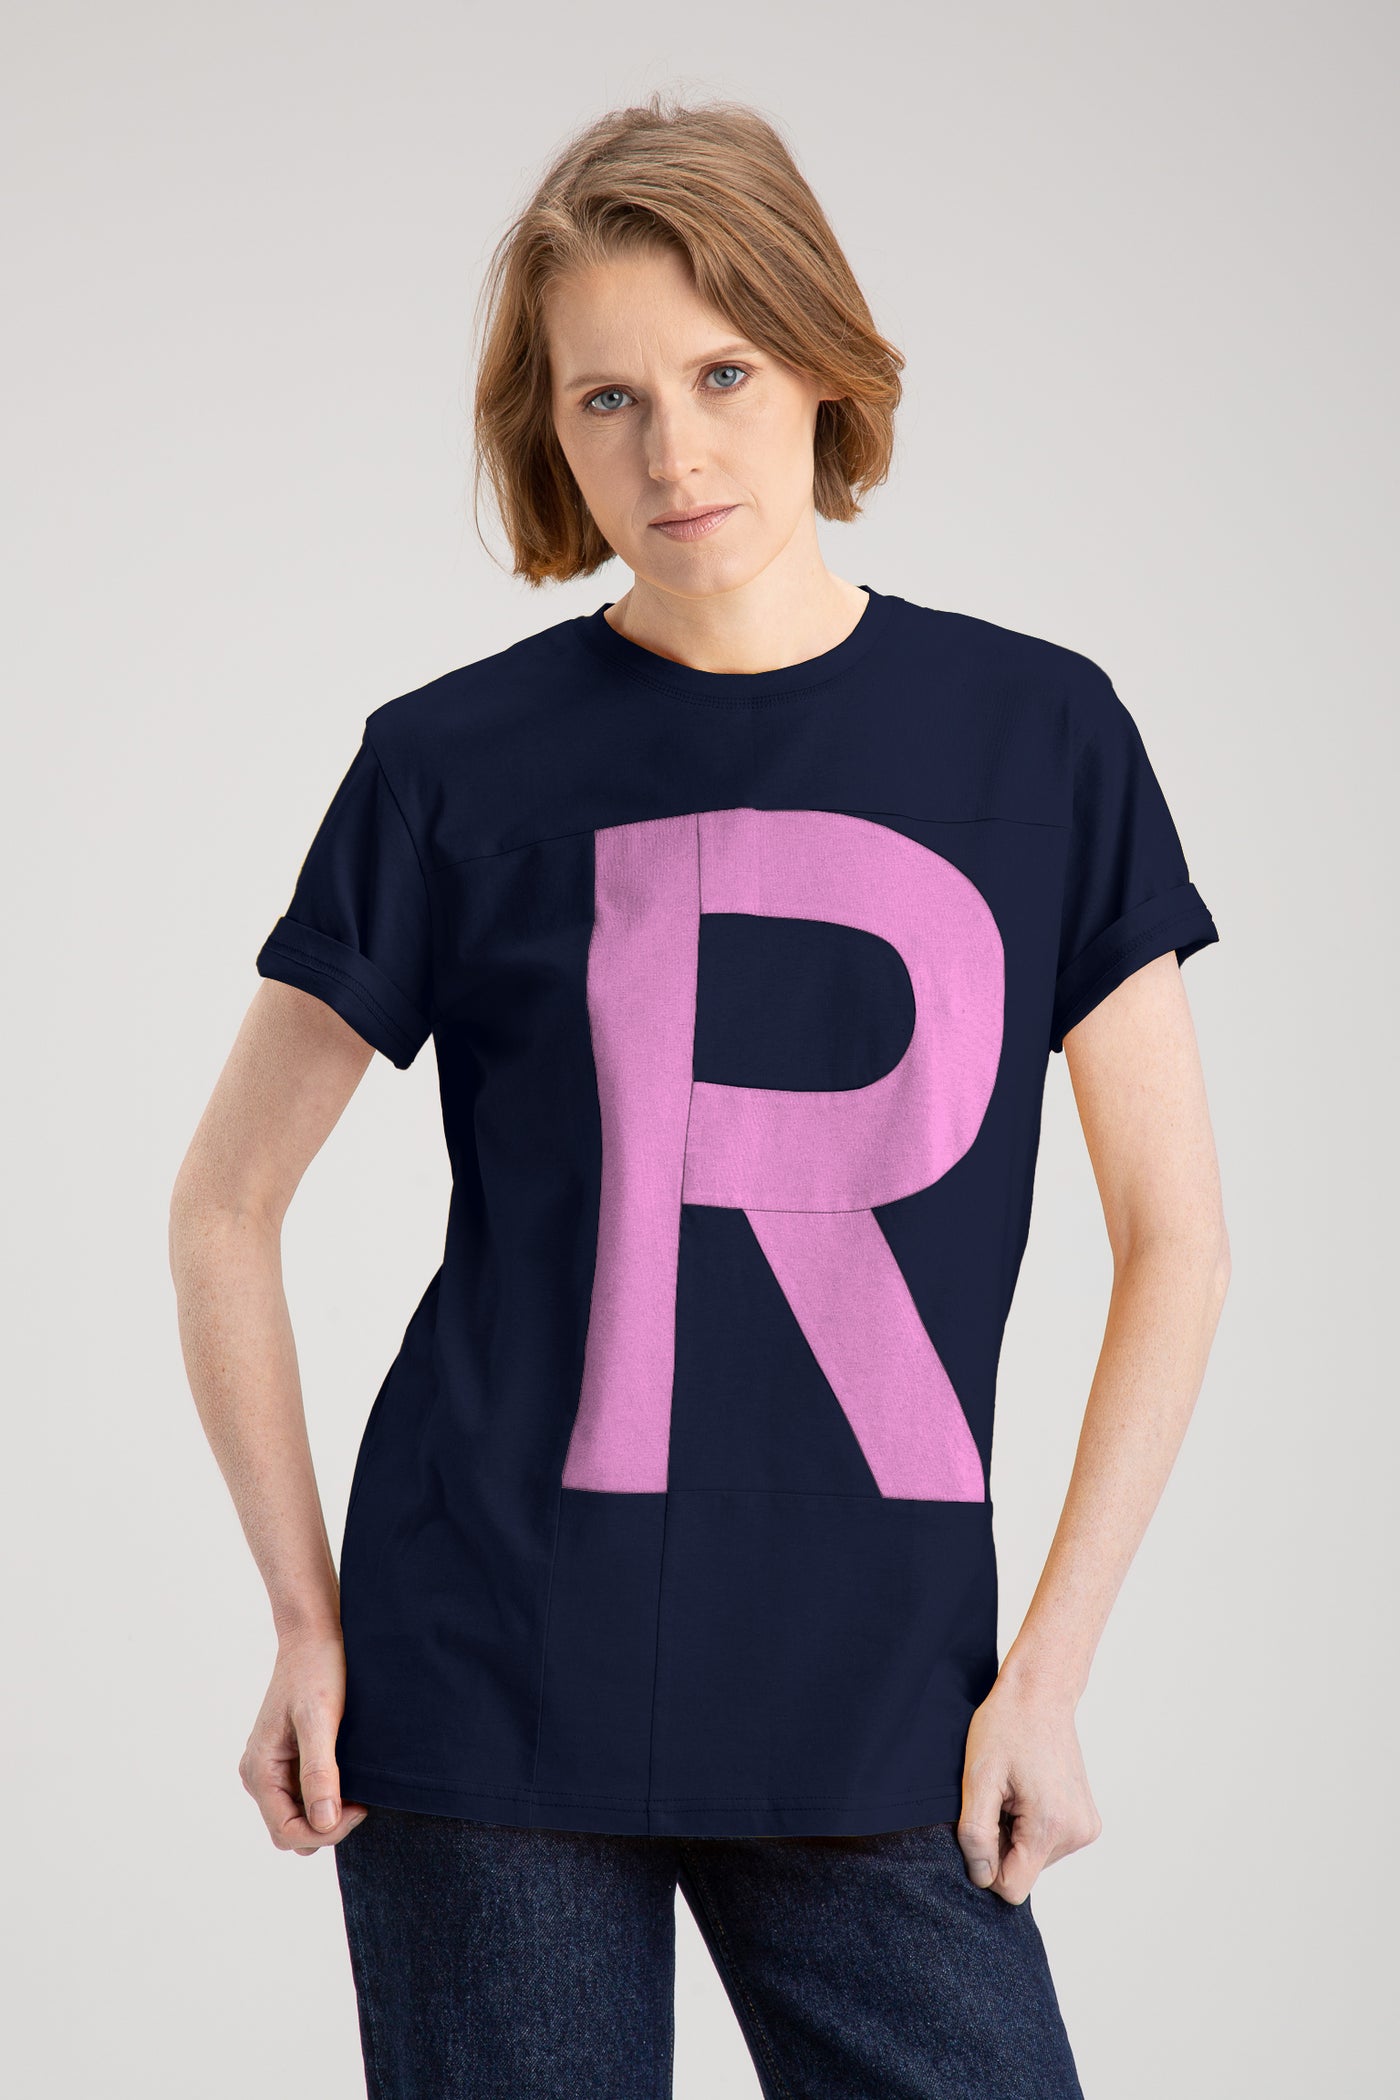 Up-shirt for women - R motif | Blue, pink